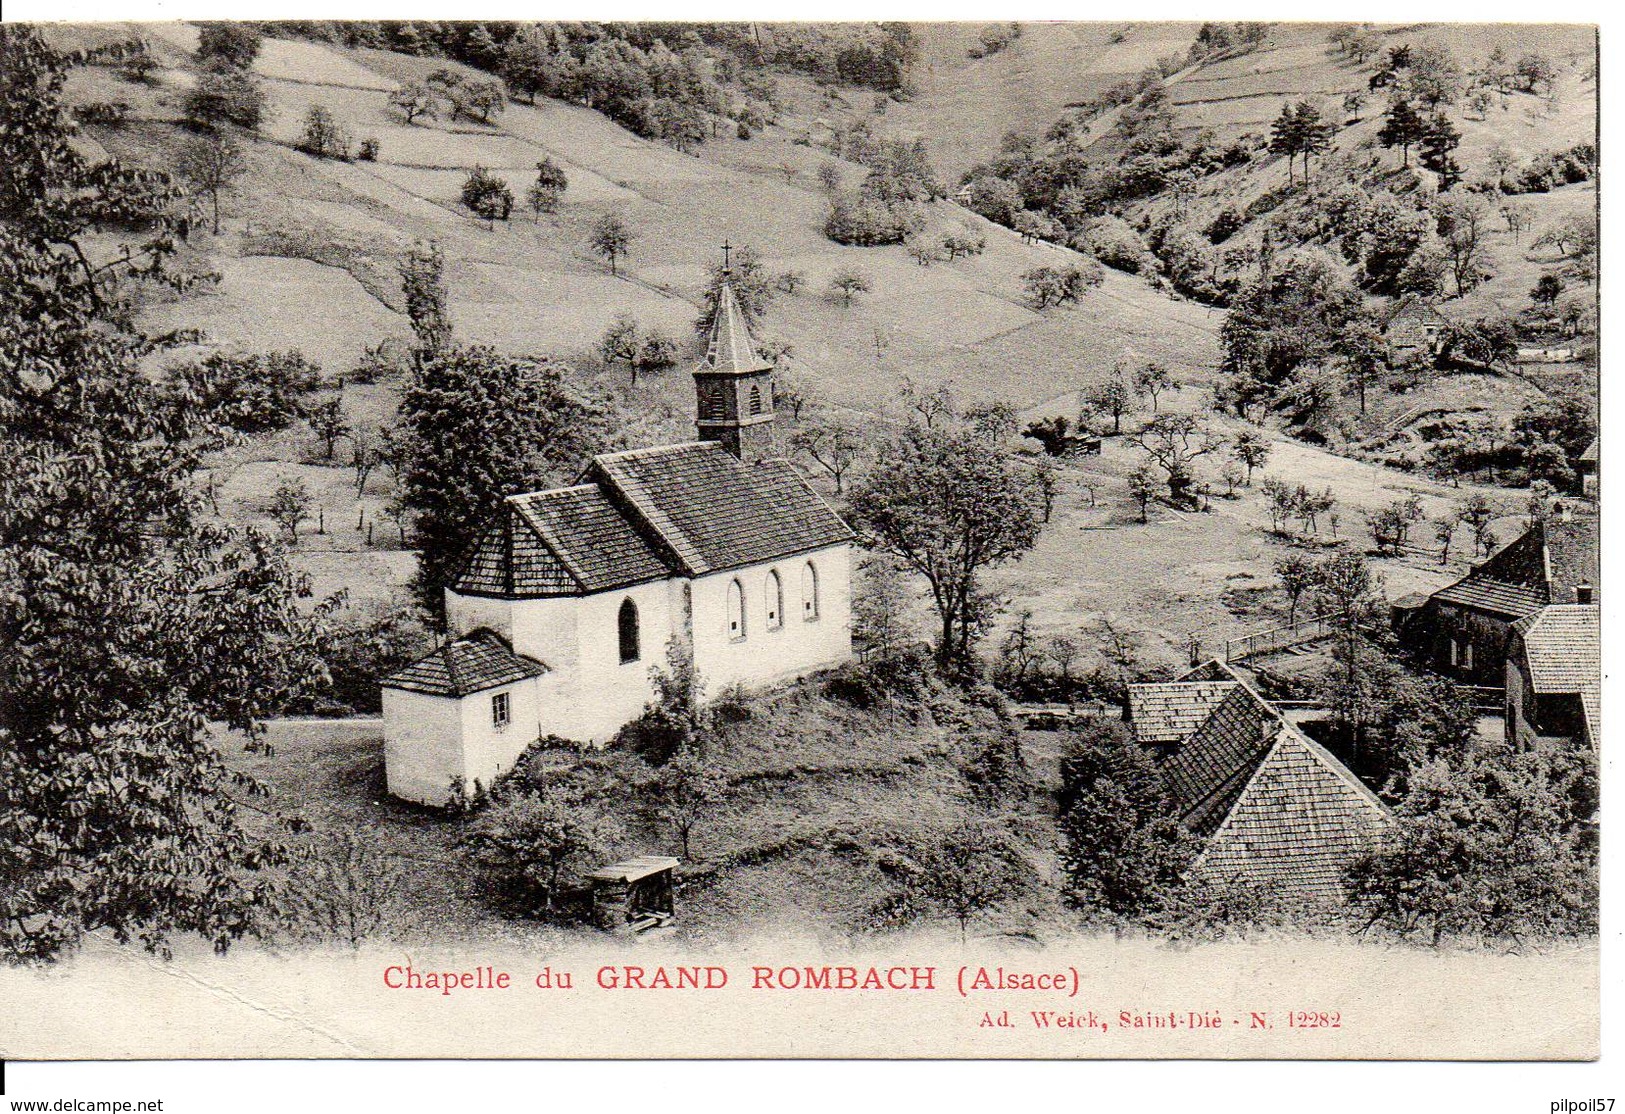 68 - CHAPELLE DU GRAND ROMBACH (pli D'album) - Sainte-Croix-aux-Mines